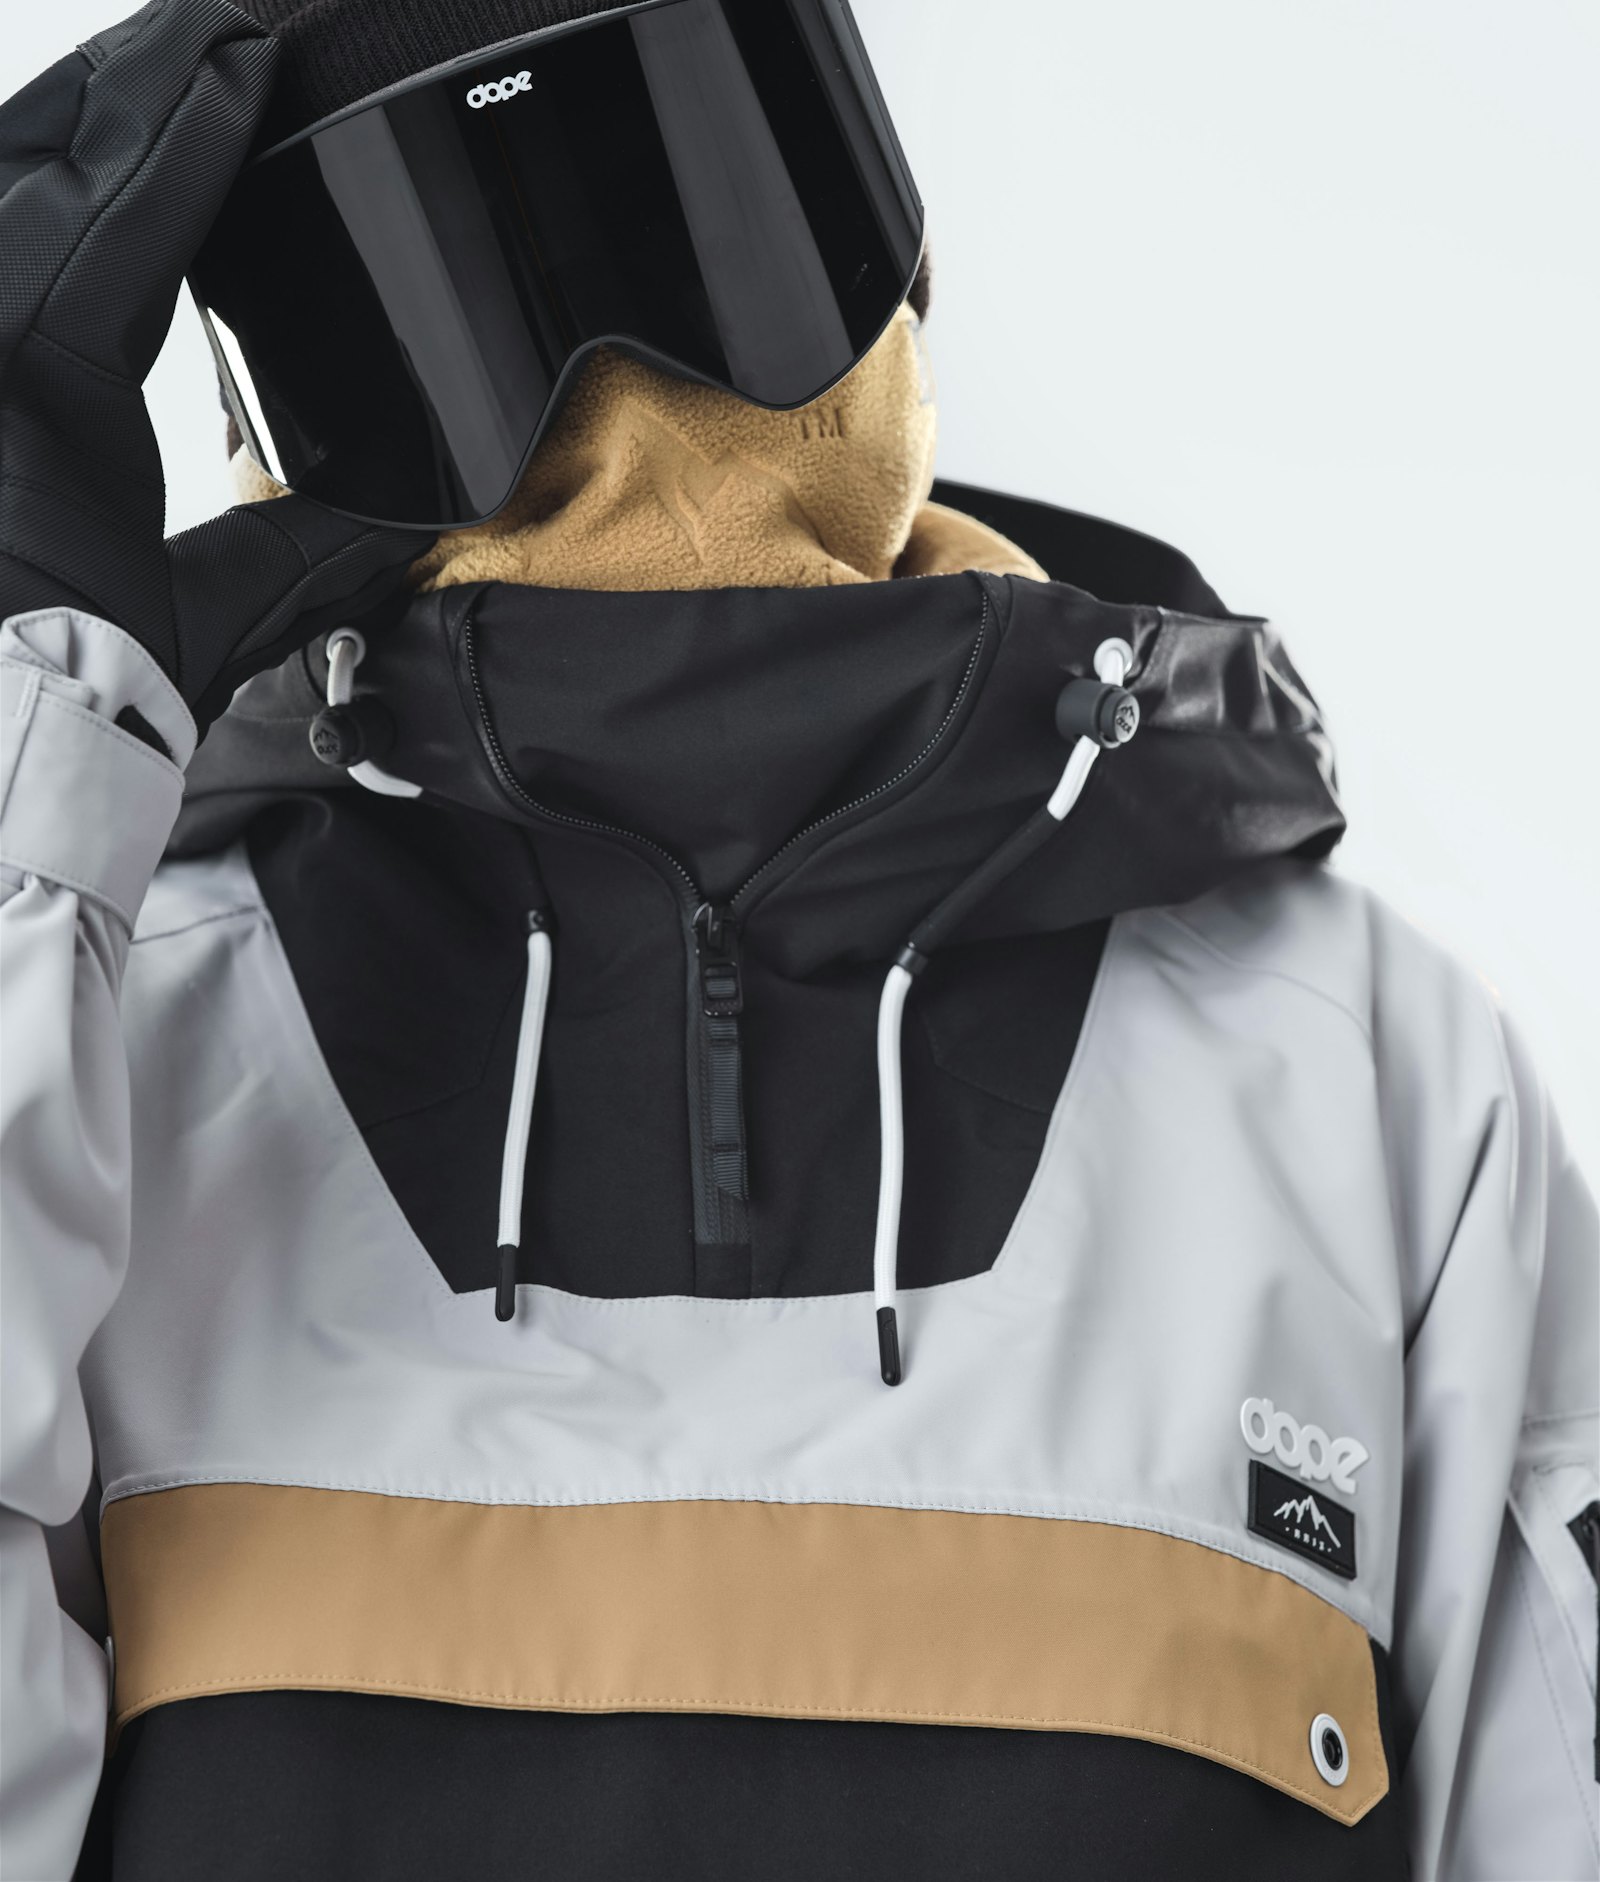 Dope Annok 2020 Veste Snowboard Homme Light Grey/Gold/Black